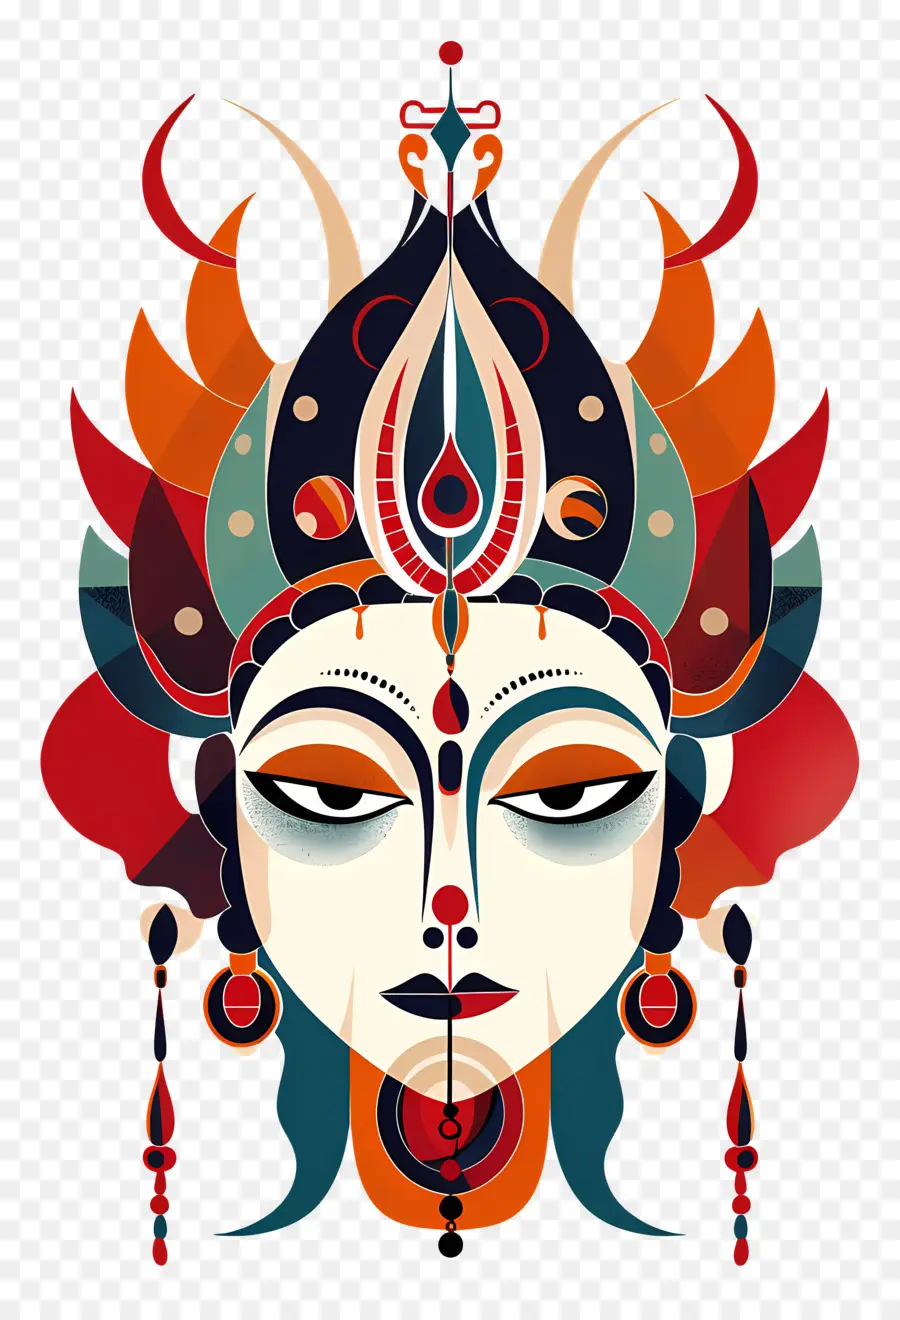 Maa Chandraghanta Nữ thần Ấn Độ giáo công bằng - Hình ảnh chi tiết của khuôn mặt nữ thần Hindu